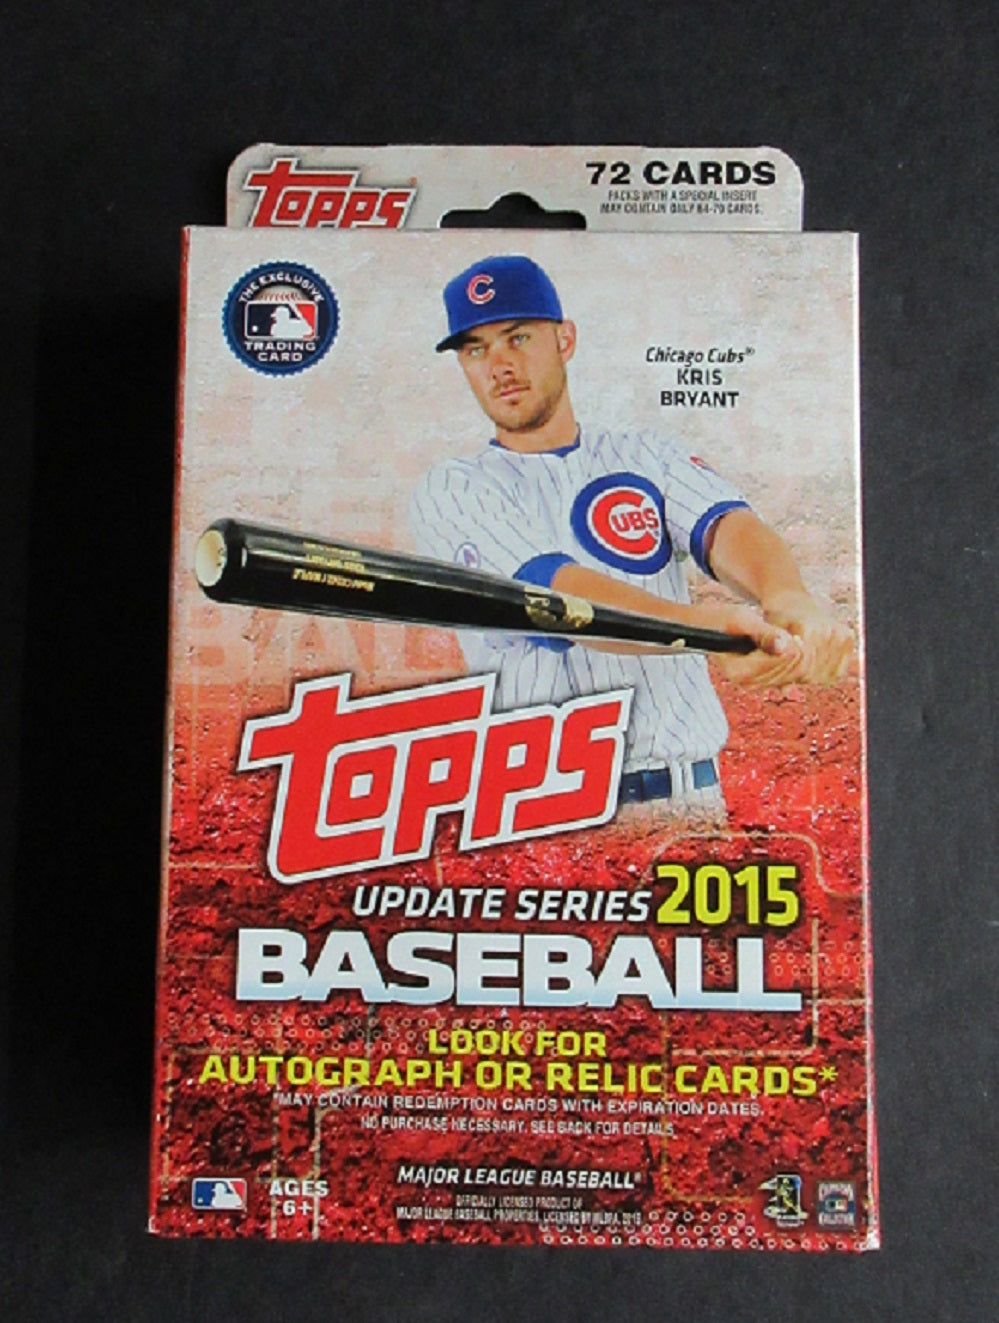 2015 Topps Baseball Update Series Hanger Box (72 Cards)